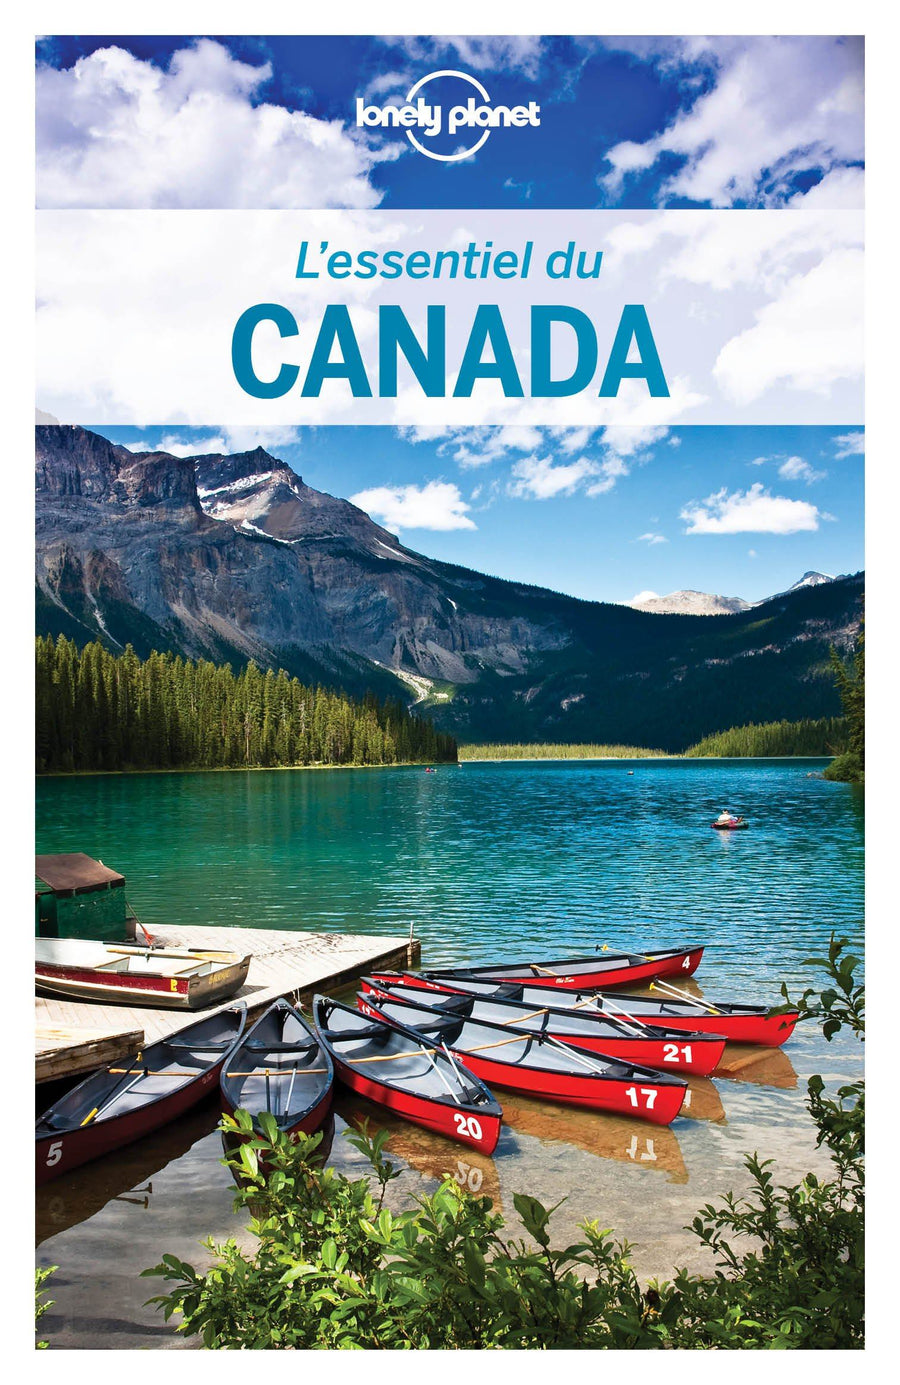 Guide de voyage - Canada essentiel - Édition 2020 | Lonely Planet guide de voyage Lonely Planet 